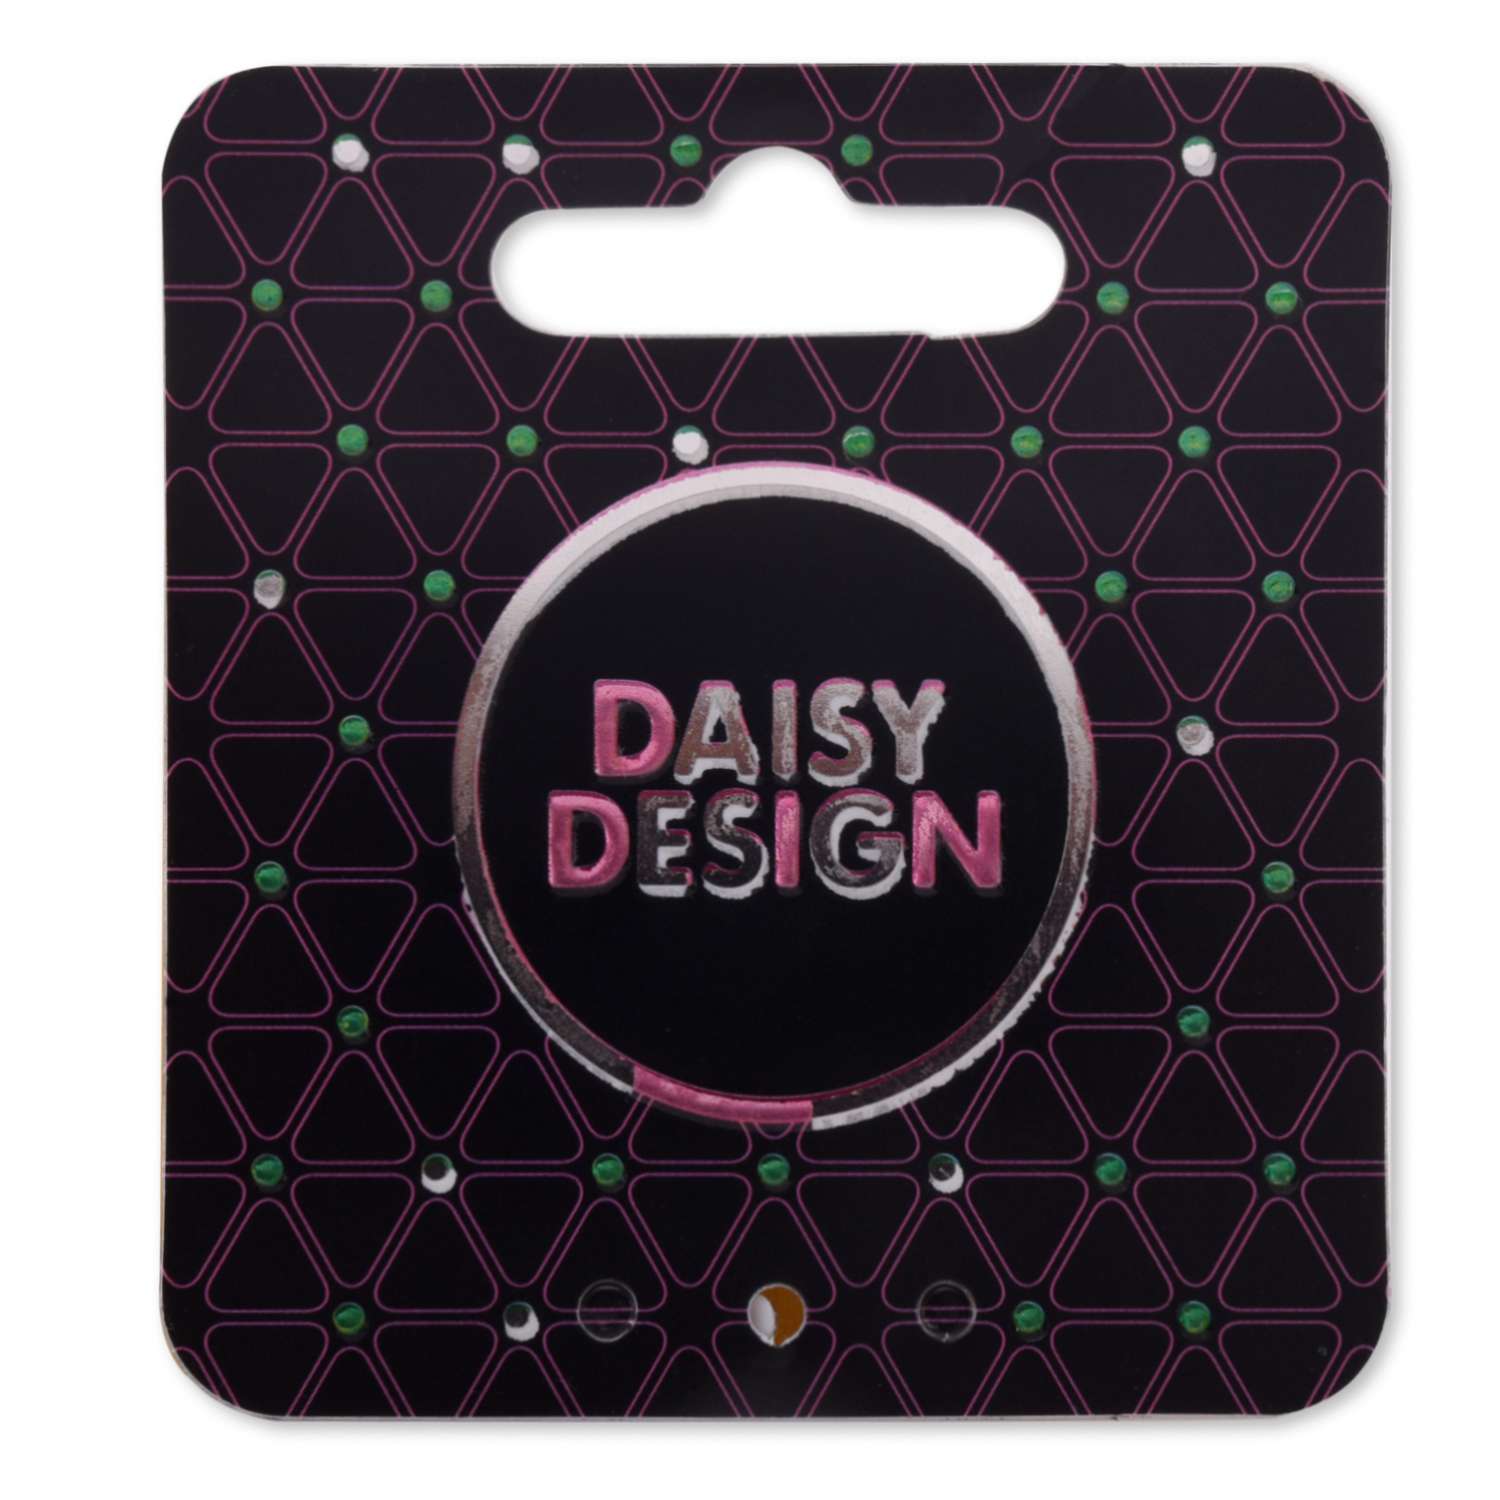 Аксессуар Daisy Design многофунциональный повязка-браслет Фуксия 51442 - фото 6